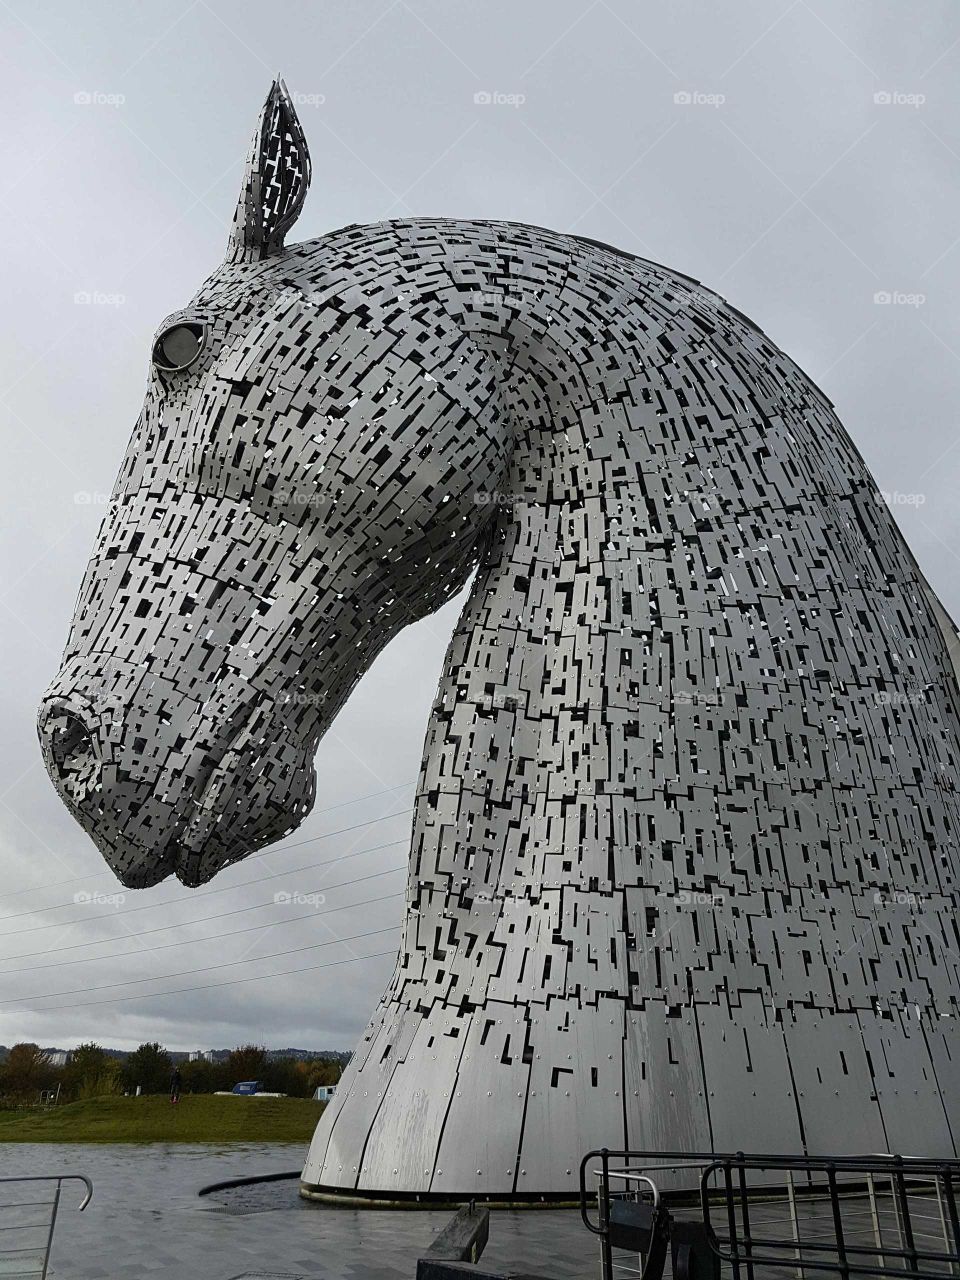 Kelpies Horse Head Sculptures in England